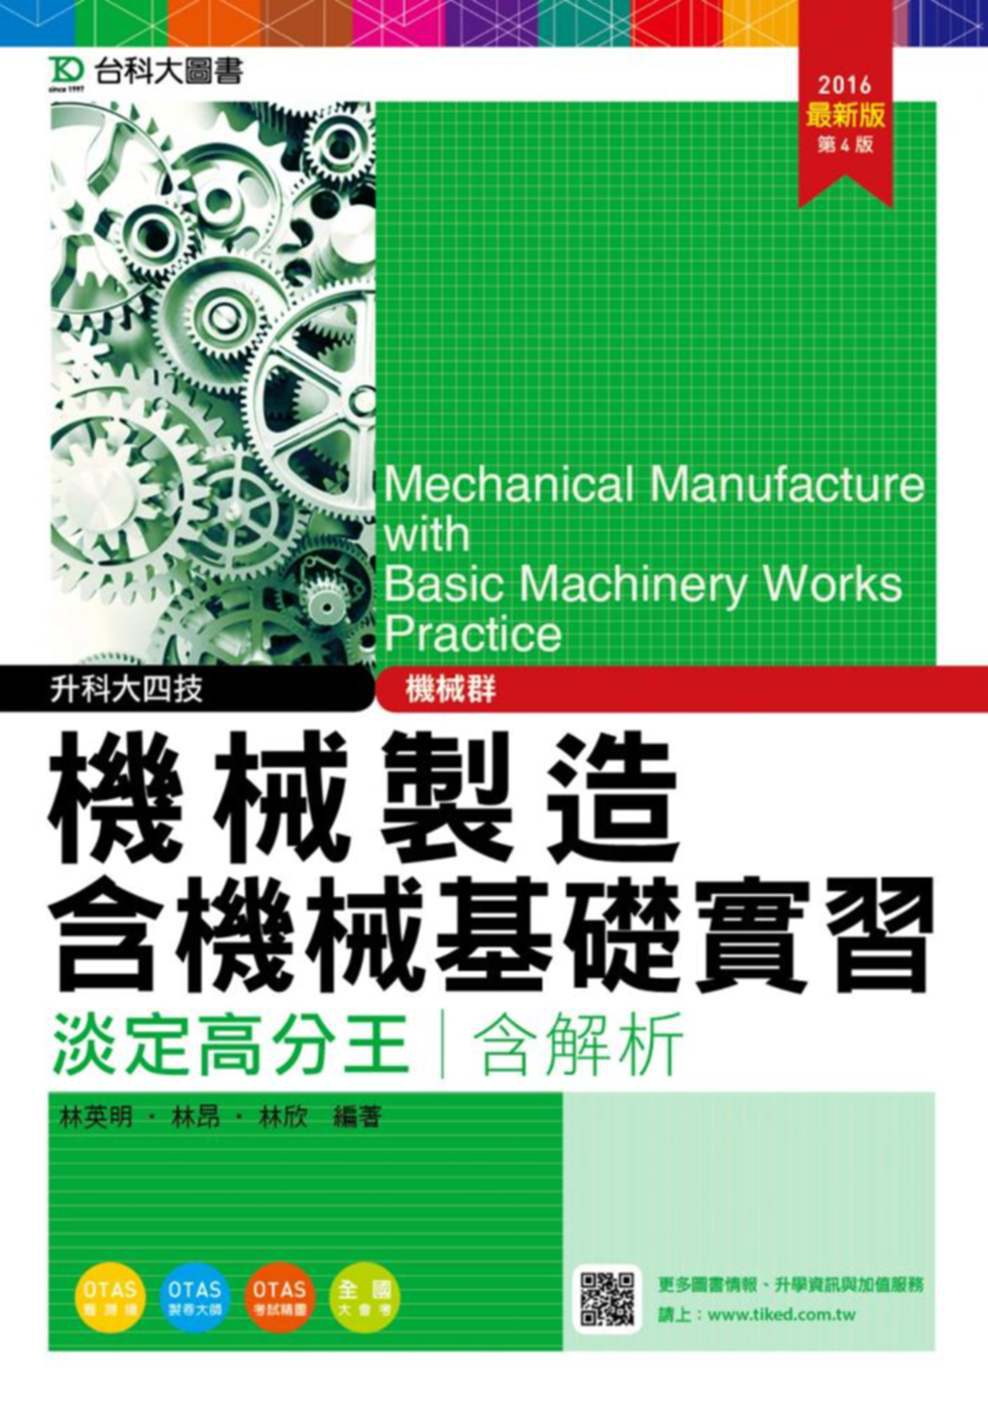 升科大四技機械群機械製造含機械基礎實習淡定高分王2016年最新版(第四版)(附贈OTAS題測系統)